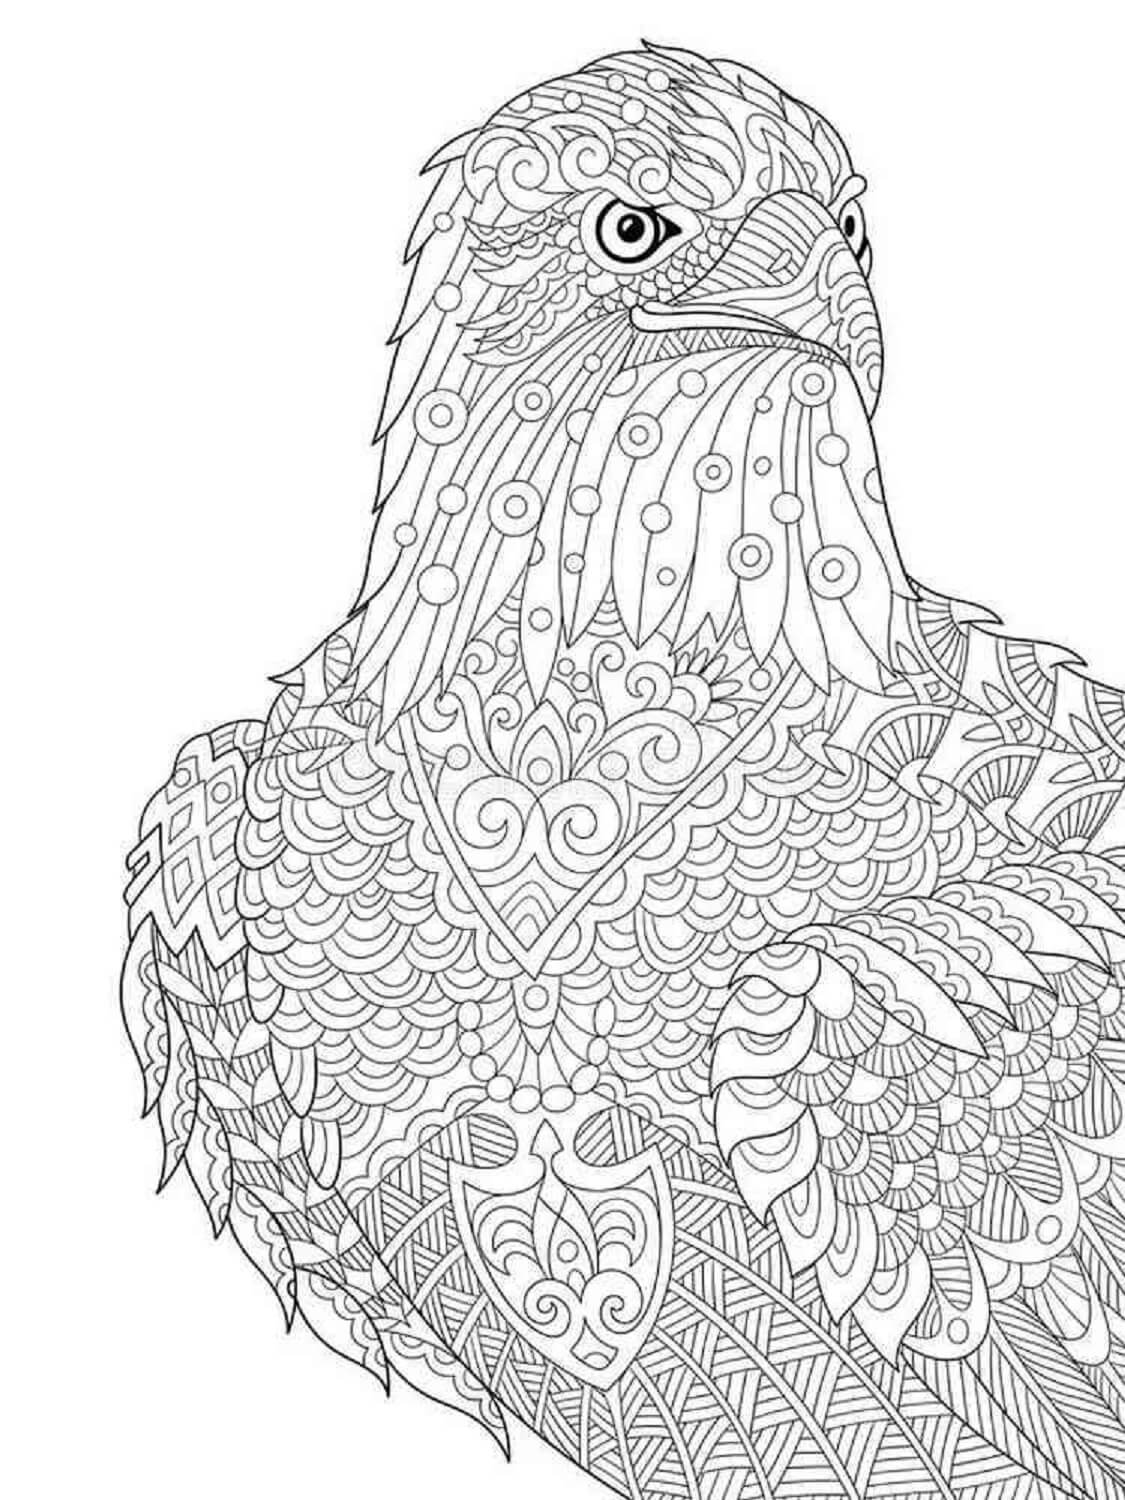 Mandala Bird Face Coloring Page Mandalas